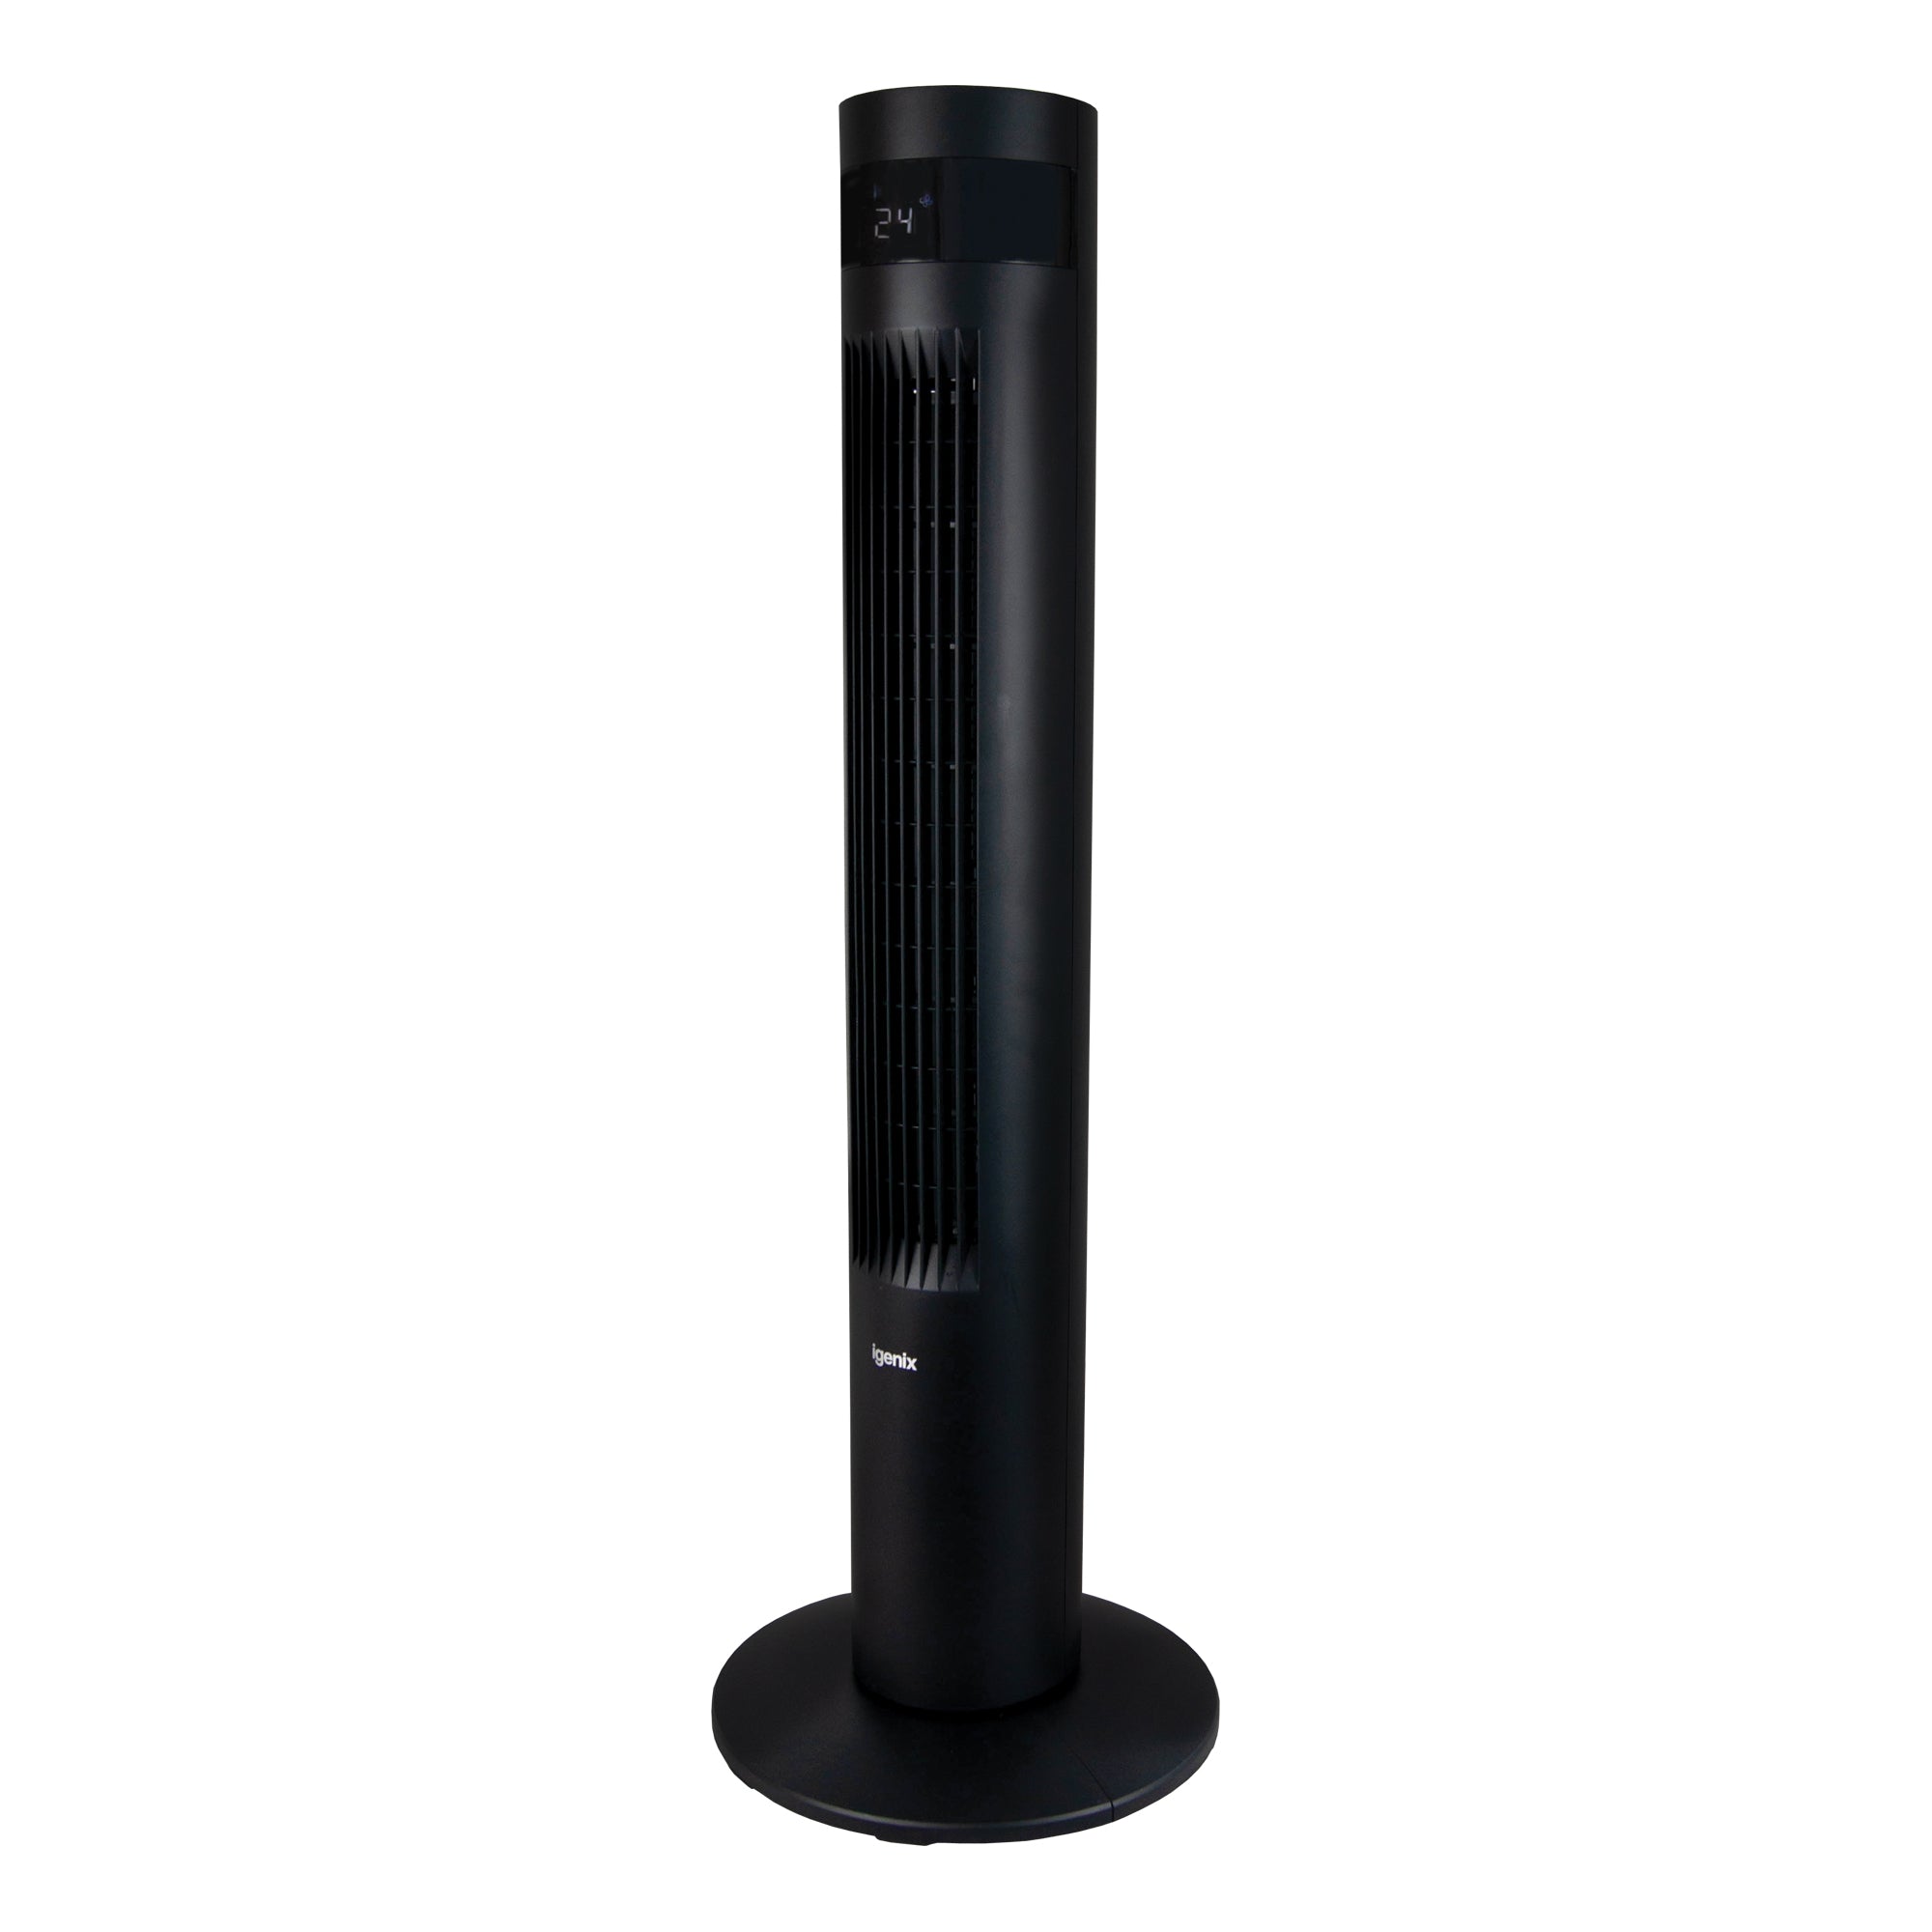 35 Inch Digital Tower Fan, 3 Speed Settings, Black